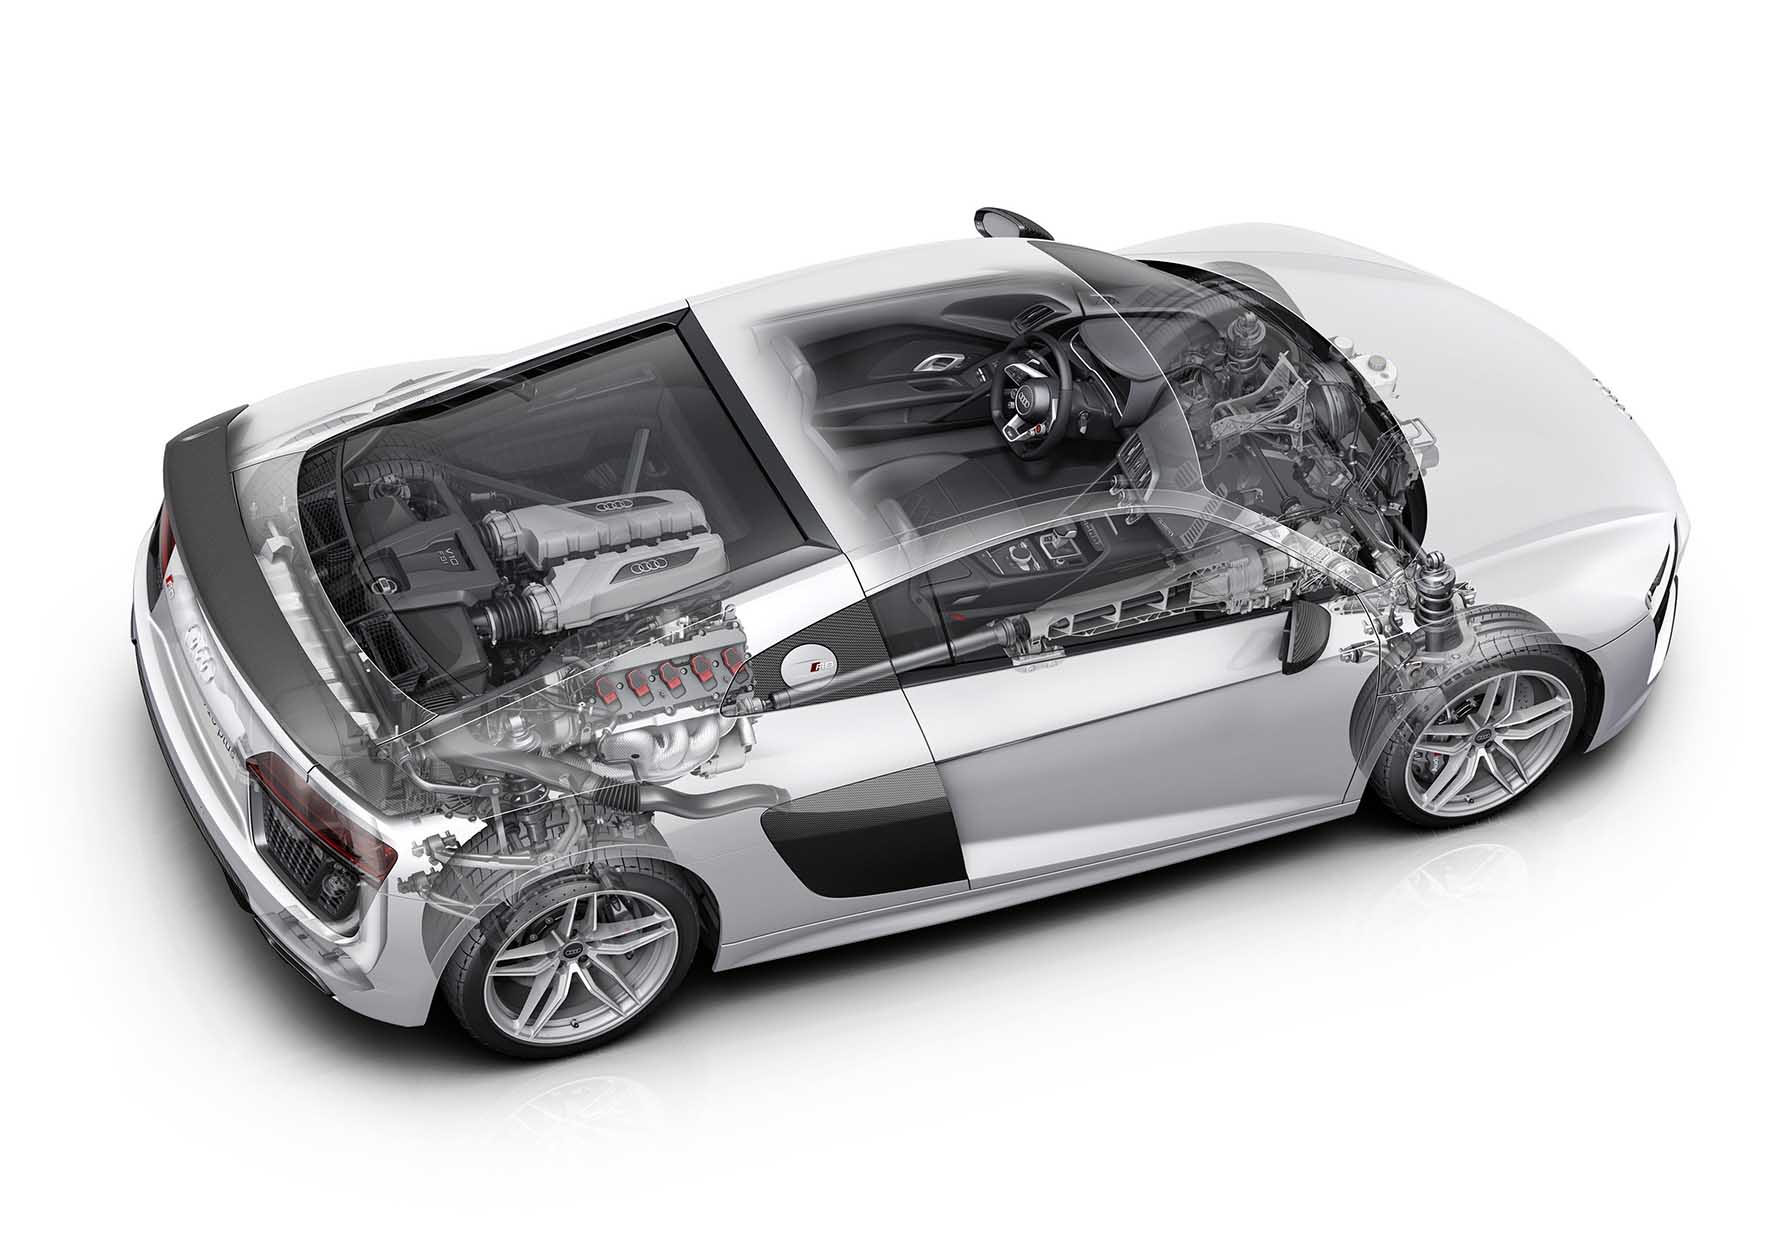 Audi new R8 2015 trasparenza meccanica